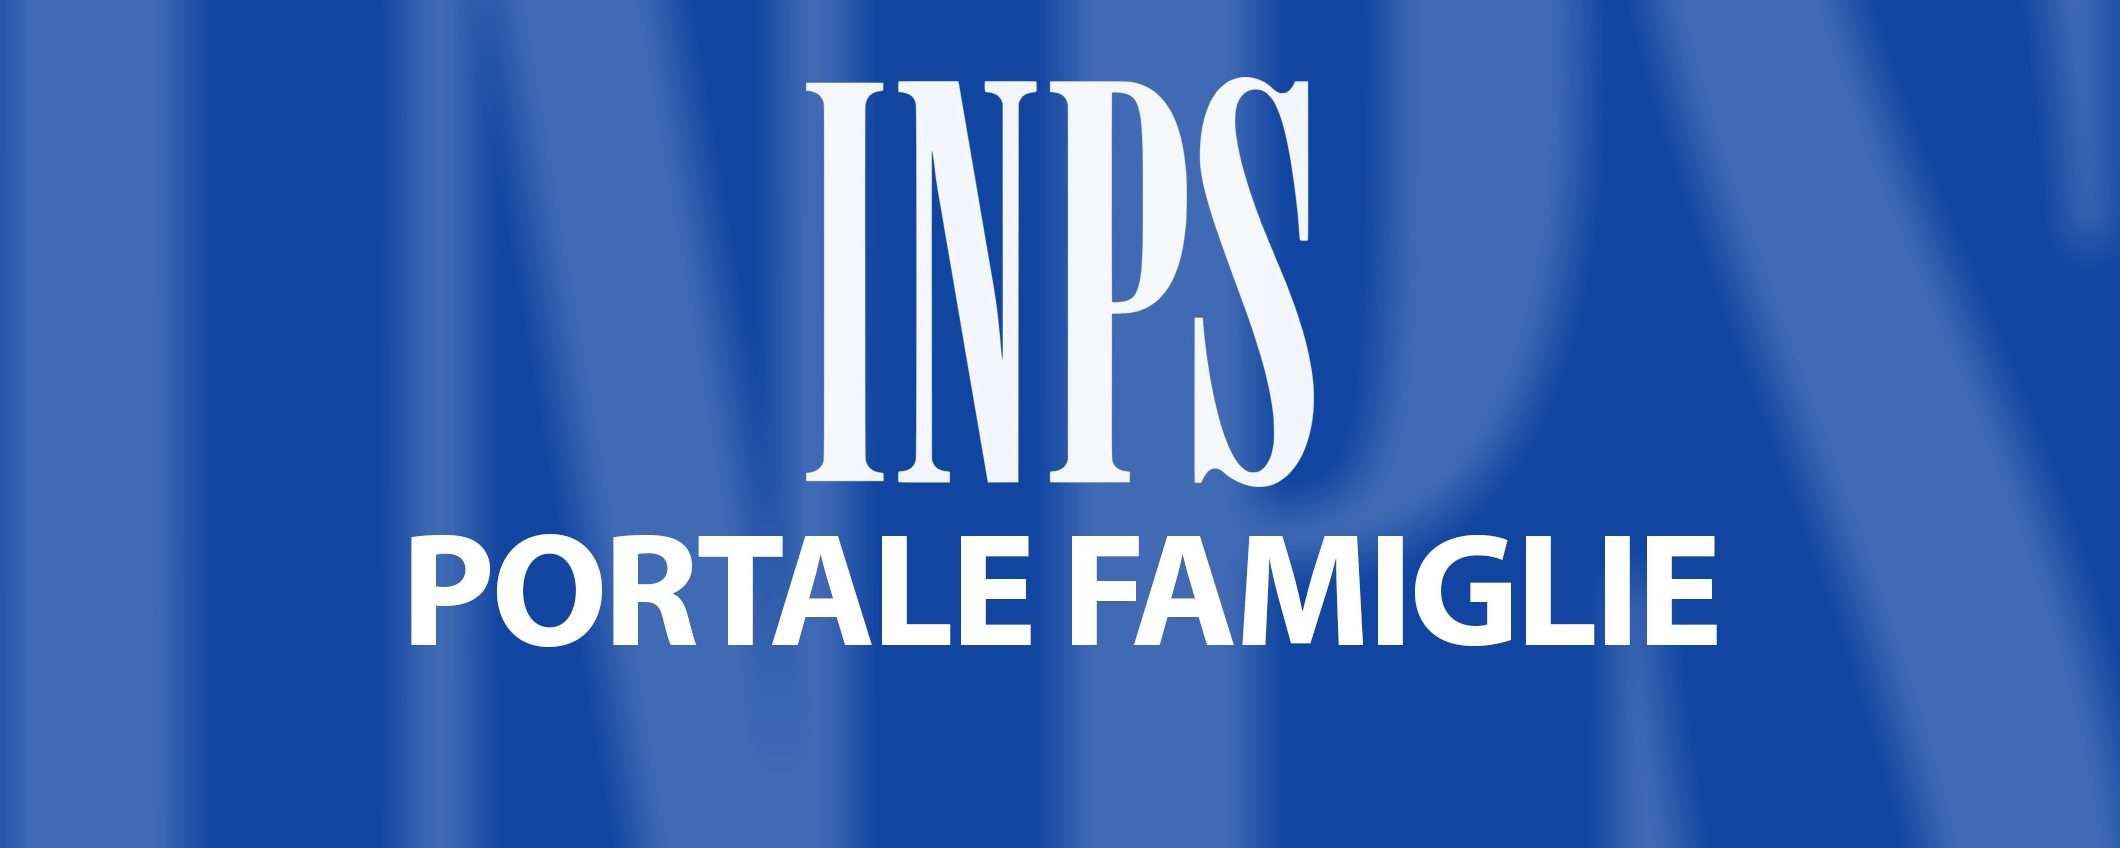 INPS, Portale Famiglie: Assegno Unico e non solo